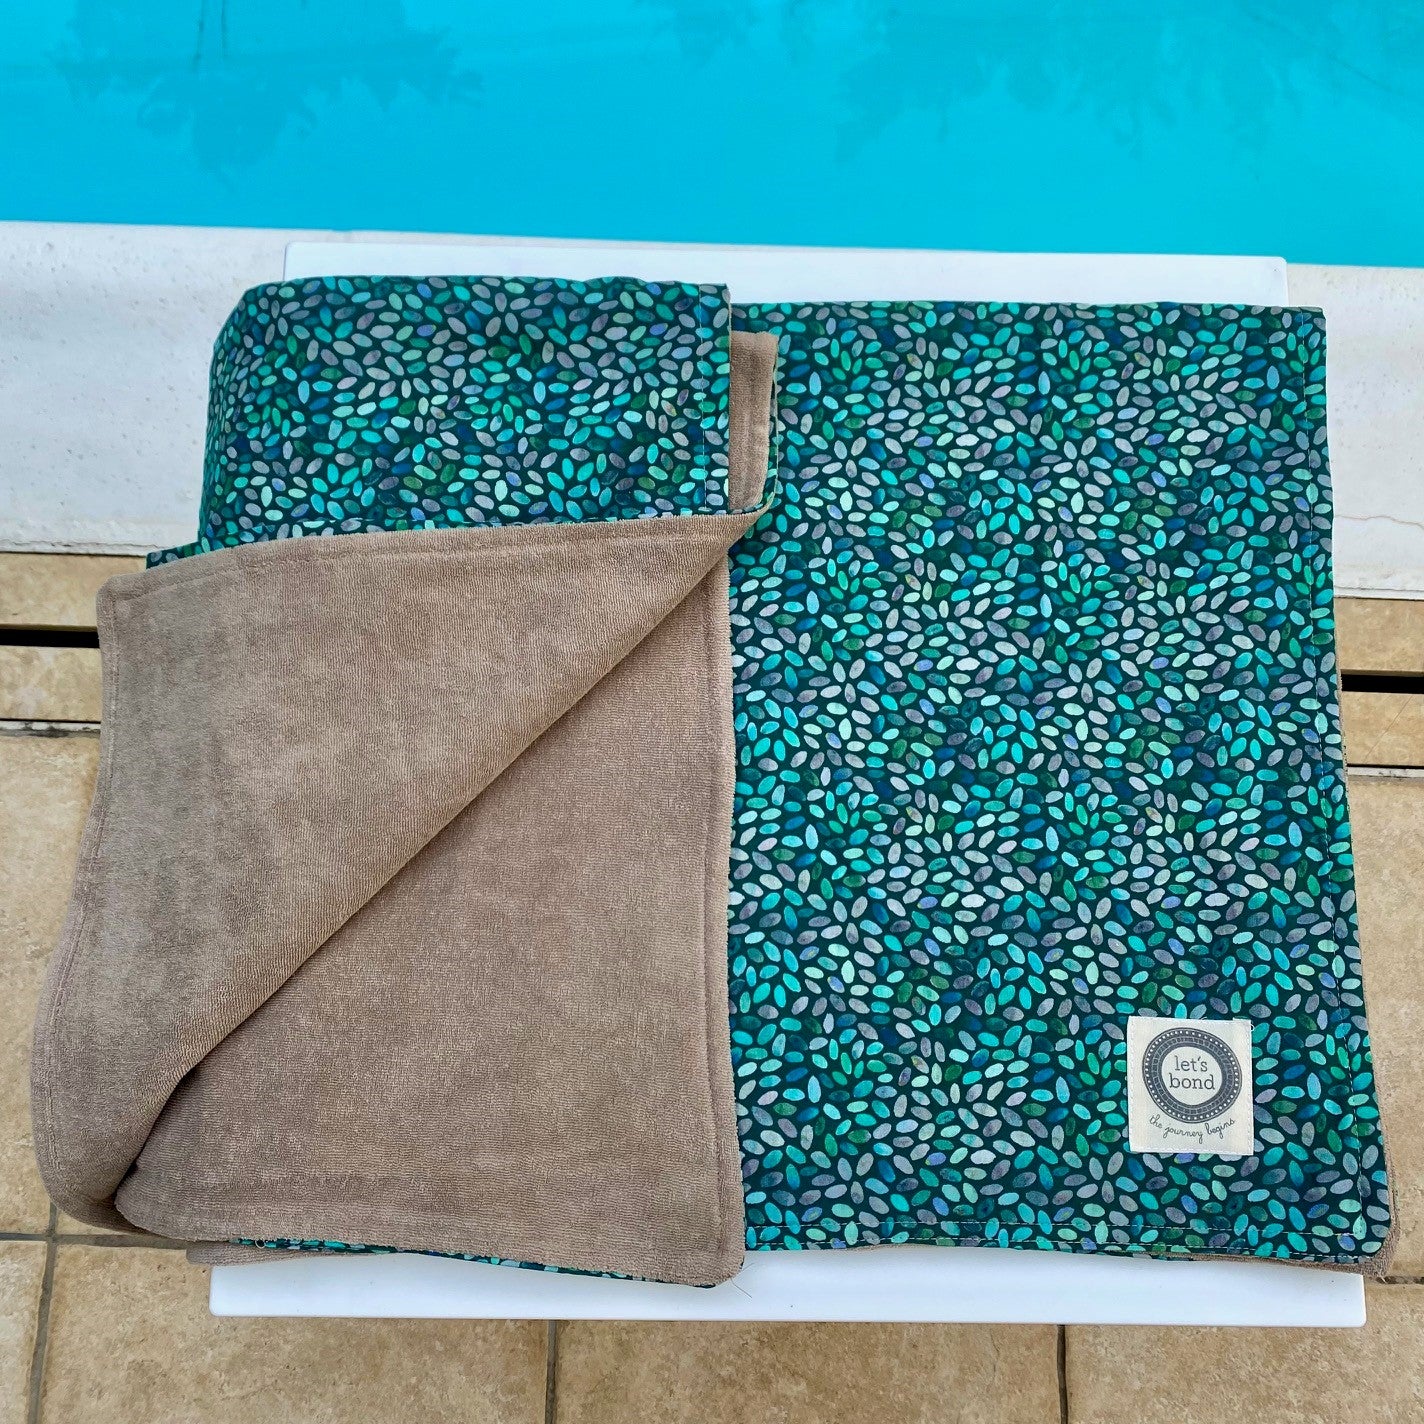 πετσέτα παραλίας με υπέροχο σχέδιο λεπτή πετσέτα 